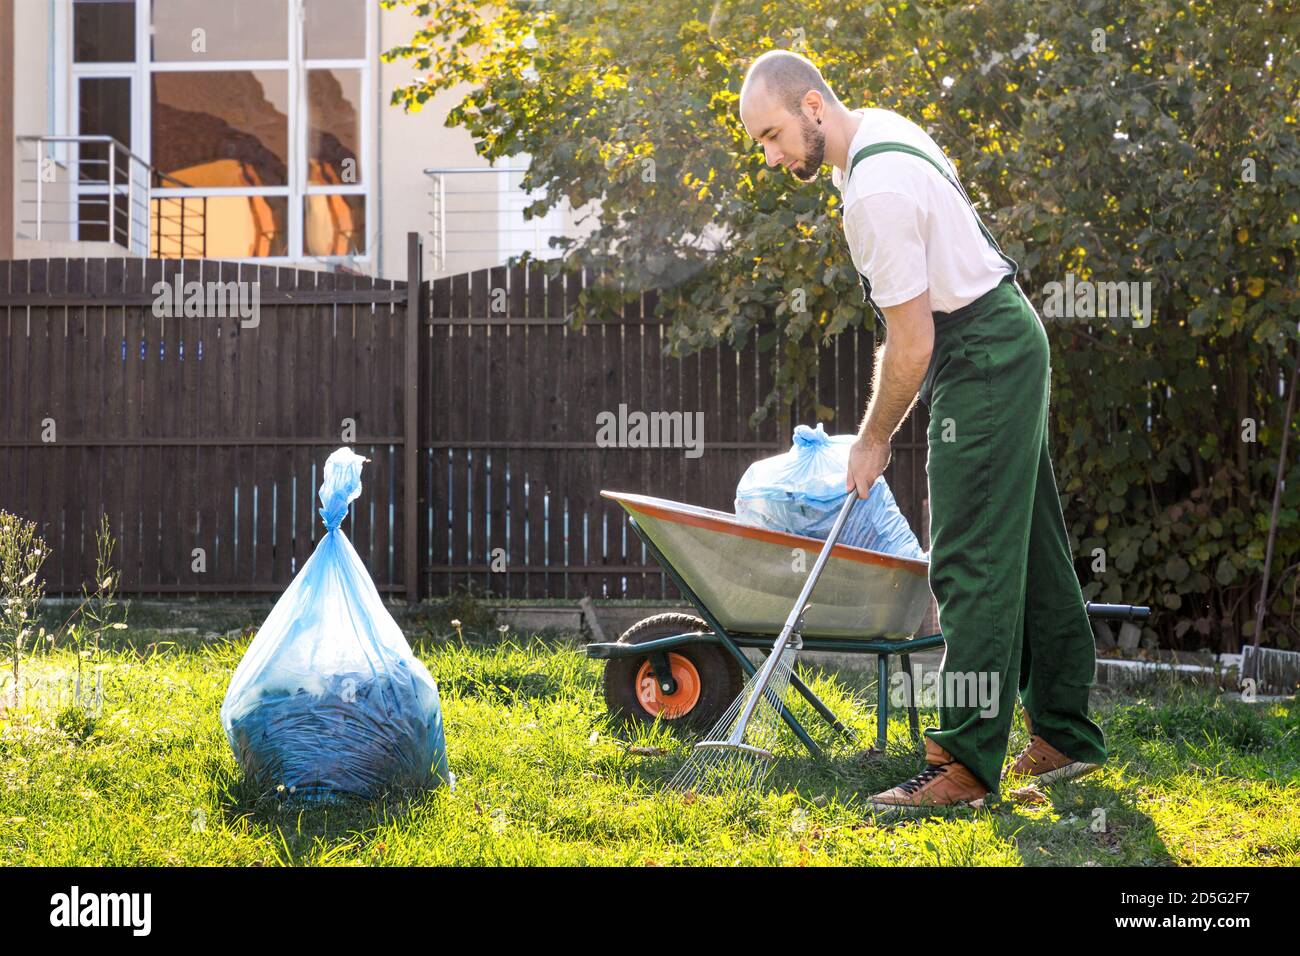 Der Gärtner in der grünen Uniform reinigt den Hof.auf dem Gras ist ein Wagen mit Kompost und einer Müllpackung. Stockfoto